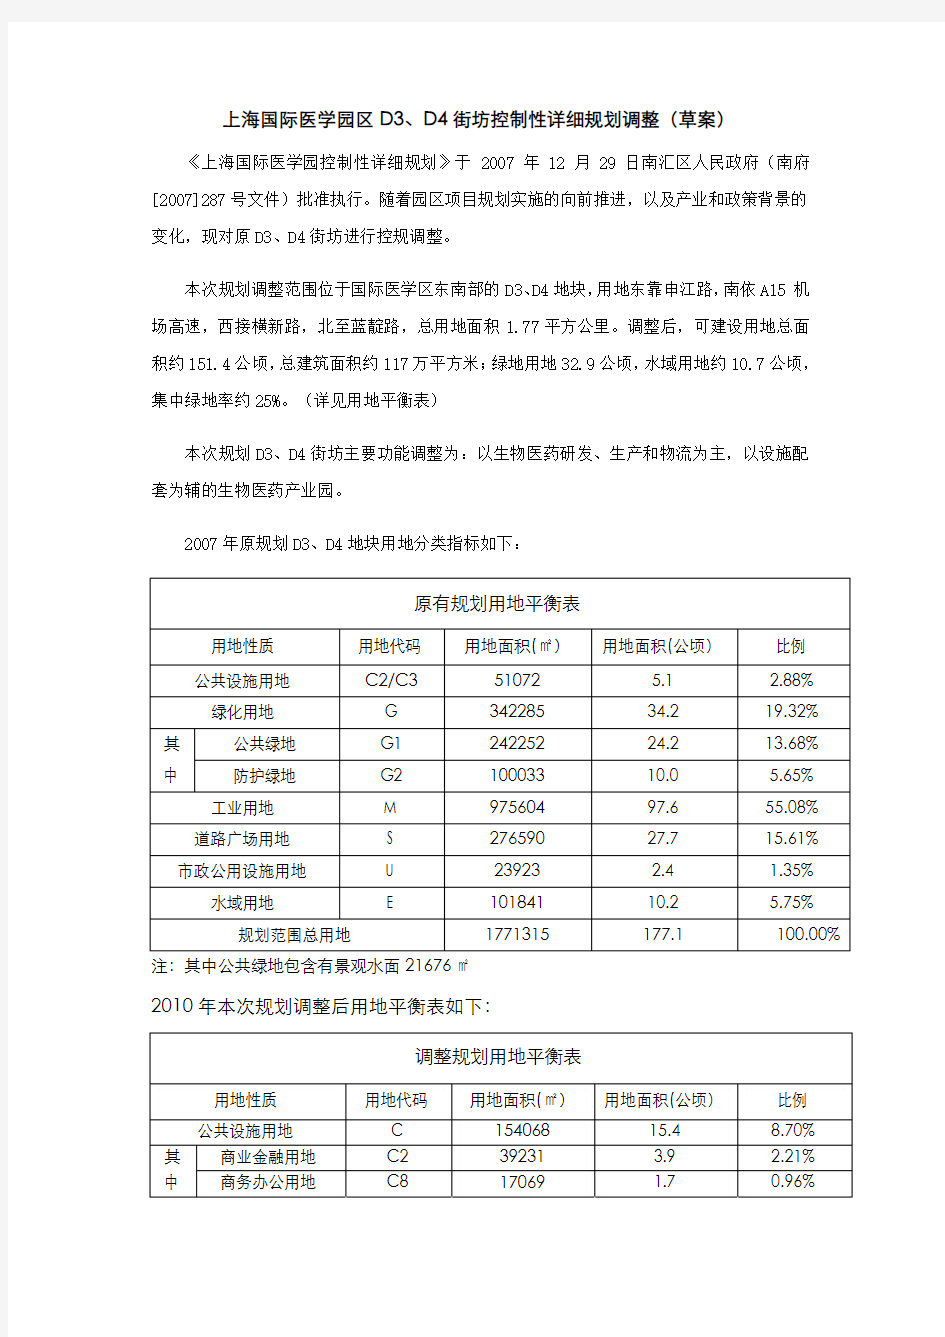 上海国际医学园区D3,D4街坊控制性详细规划调整(草案)